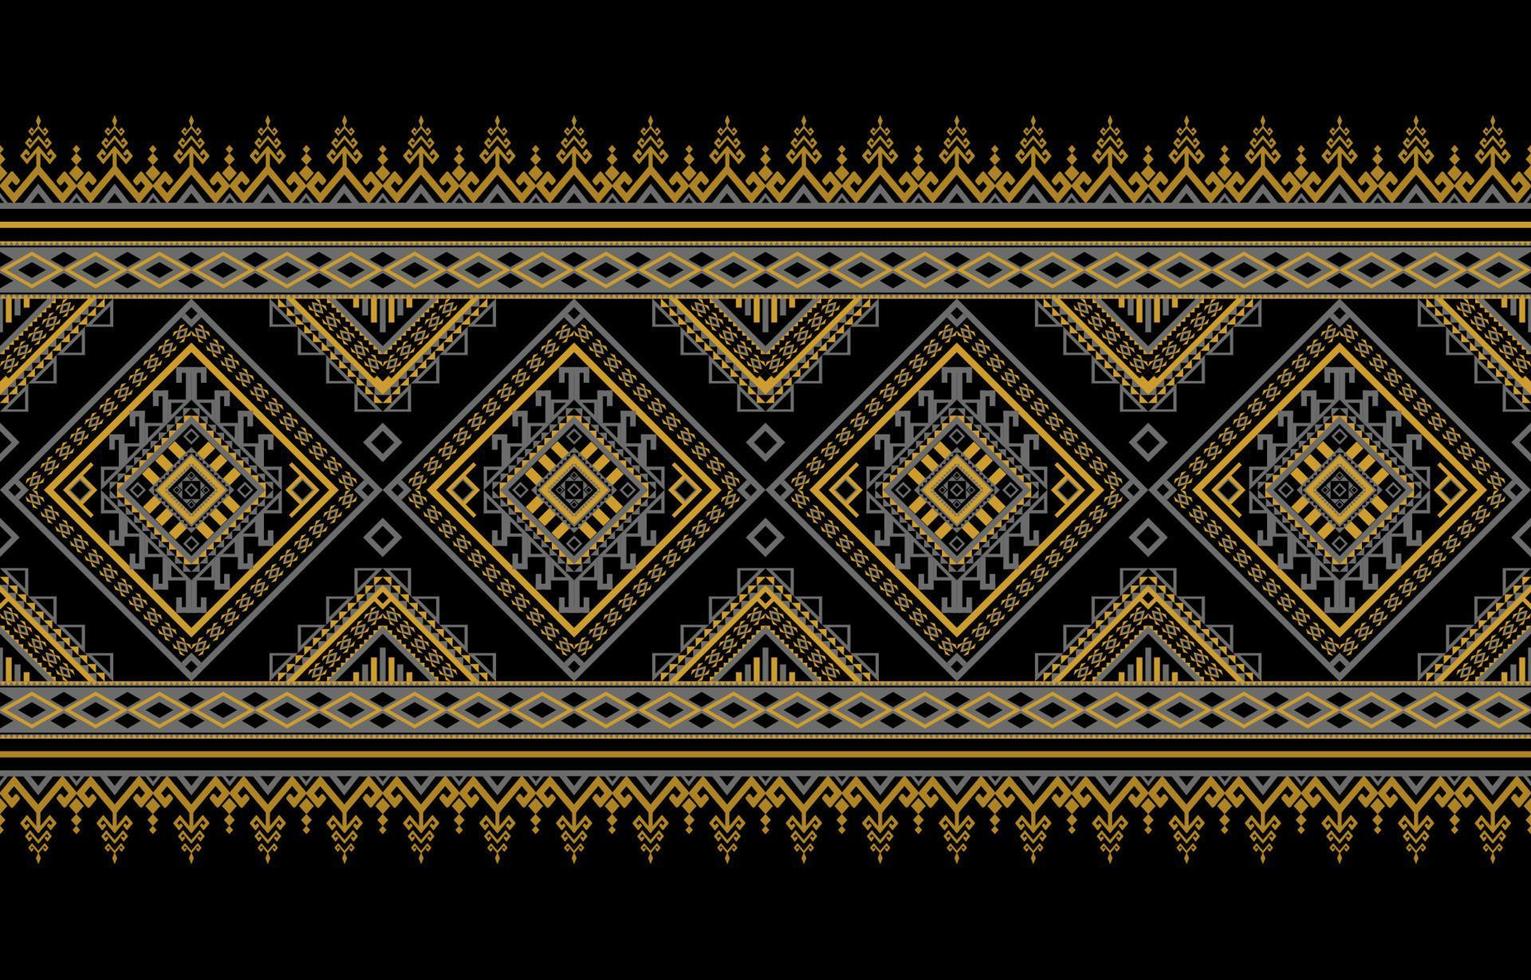 design tradicional de padrão oriental étnico geométrico para plano de fundo, tapete, papel de parede, roupas, embrulho, batic, tecido, estilo de illustraion.embroidery de vetor. vetor